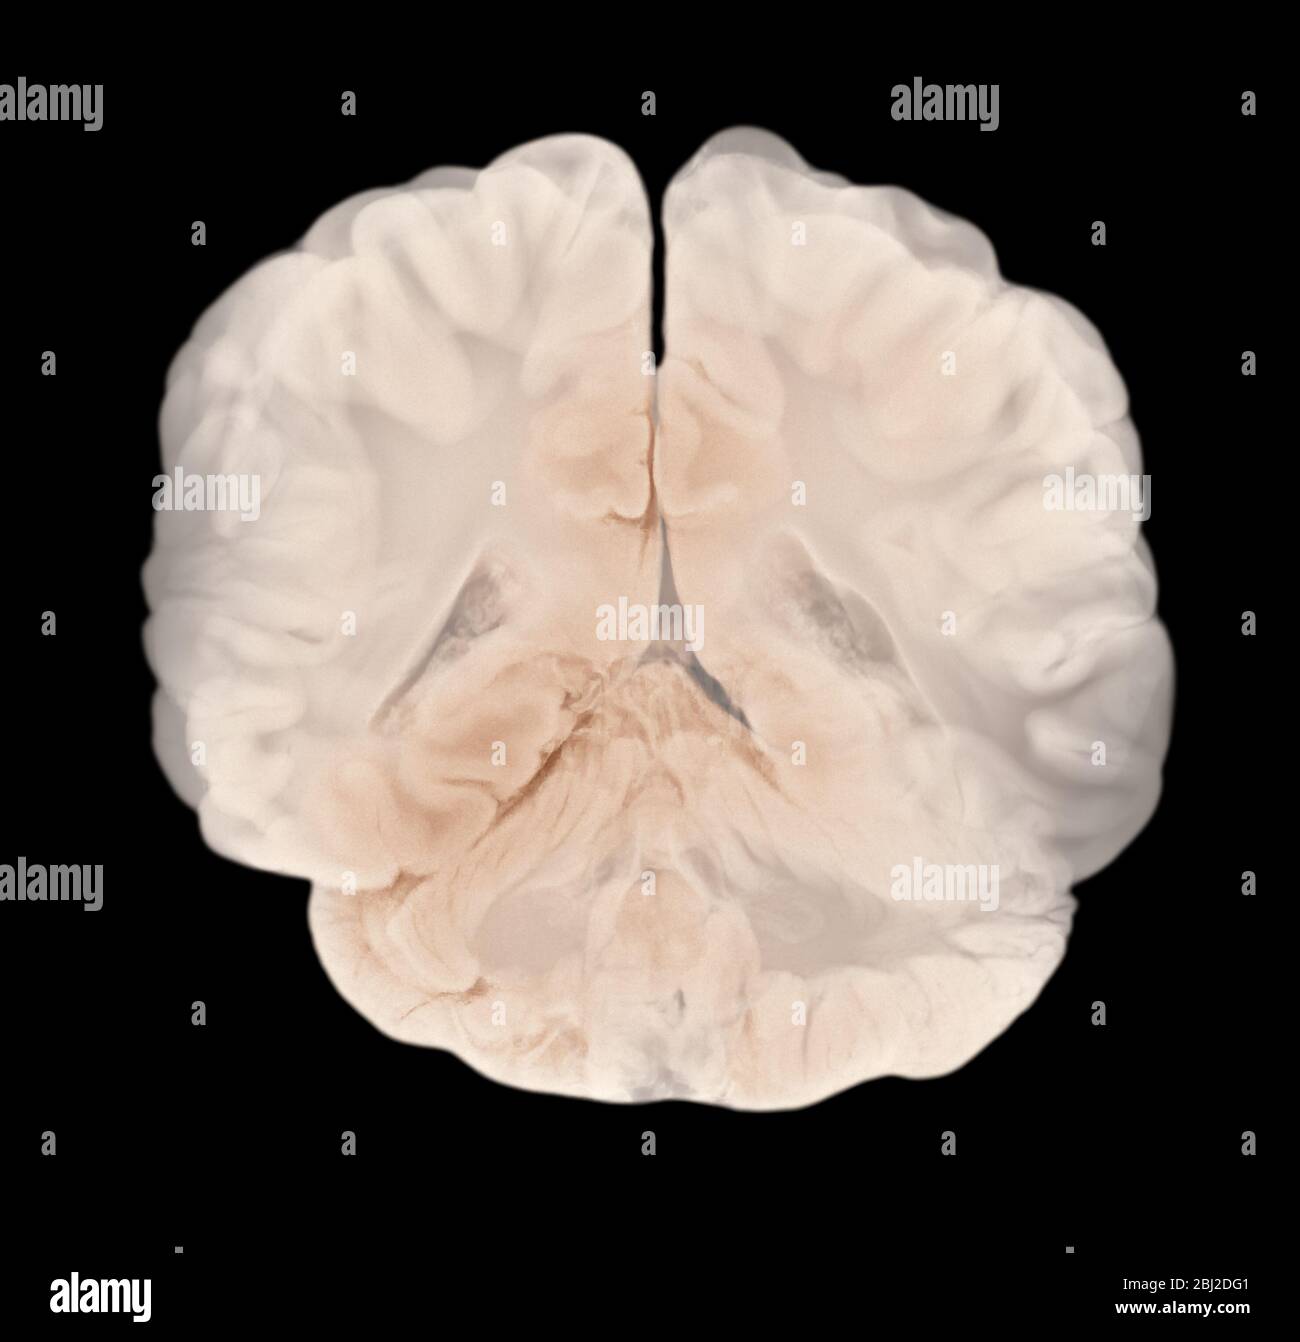 Sezione verticale attraverso emisferi cerebrali. Anatomia cerebrale umana Foto Stock